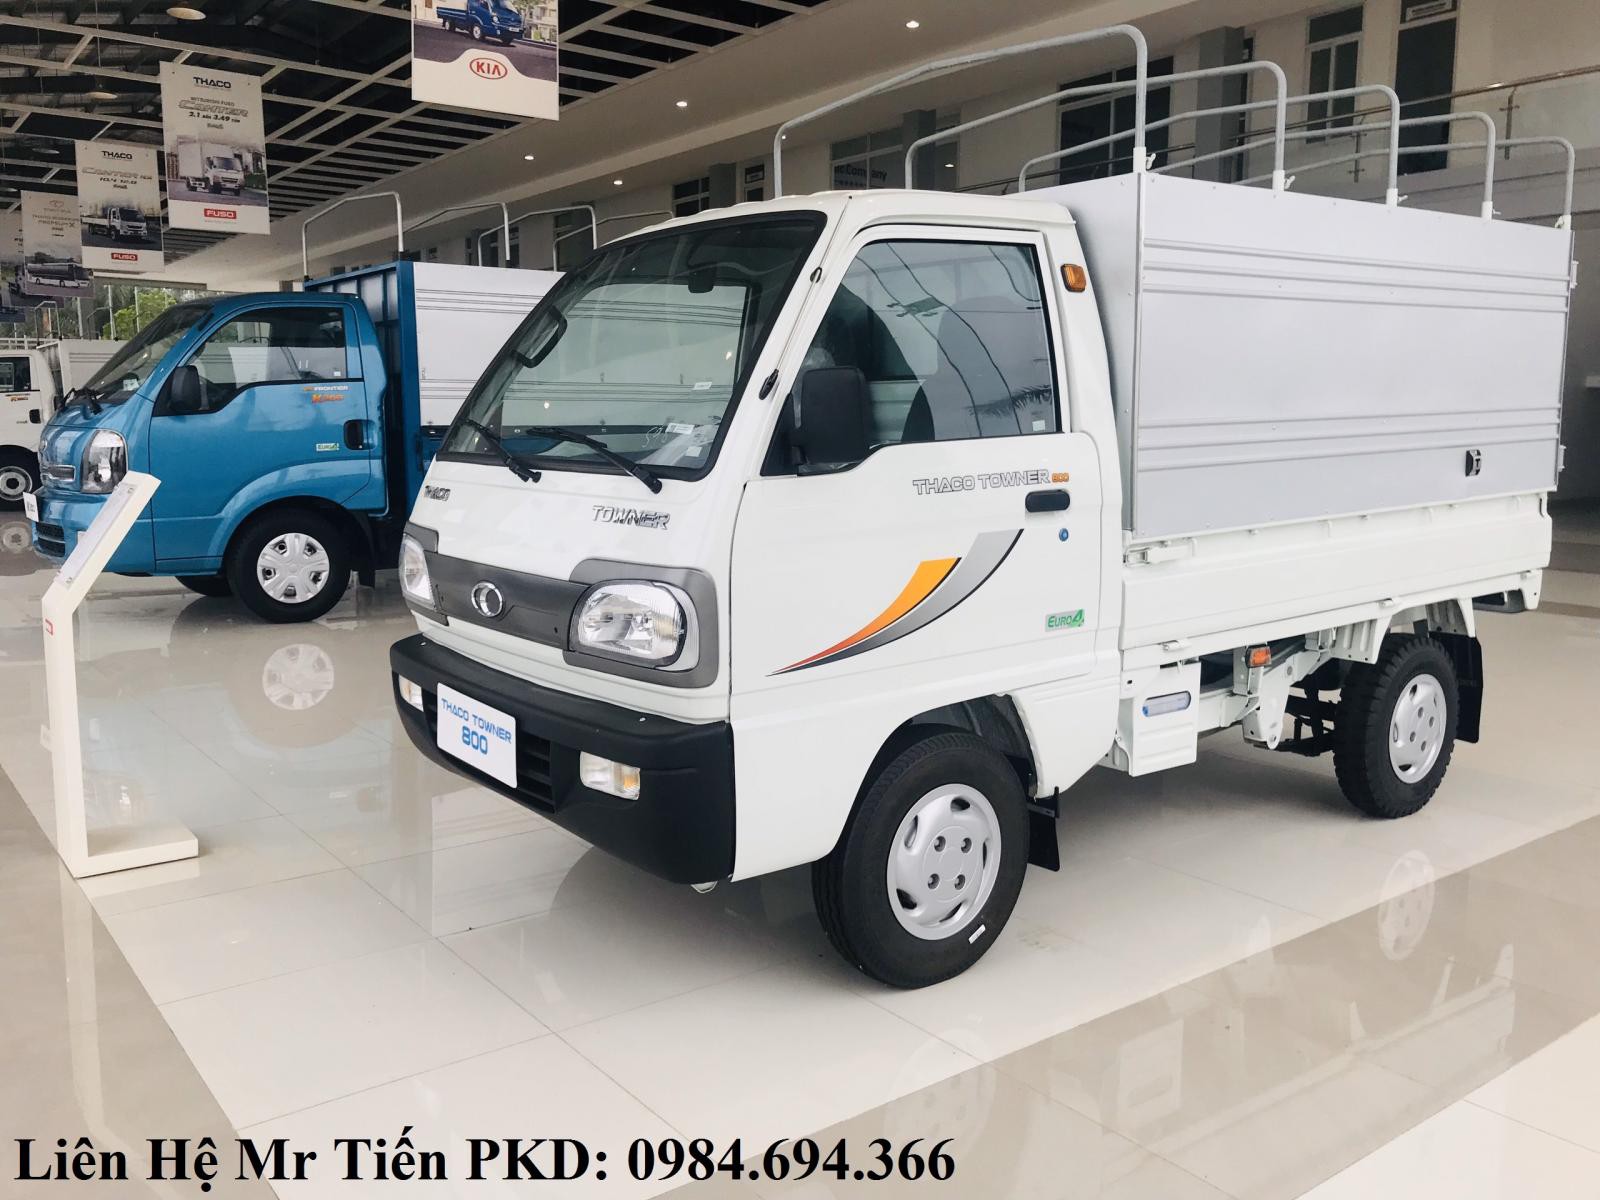 Chuyên cung cấp các dòng xe tải Thaco tải 7 tạ, 9 tạ đầy đủ các loại thùng liên hệ 0984694366, hỗ trợ trả góp